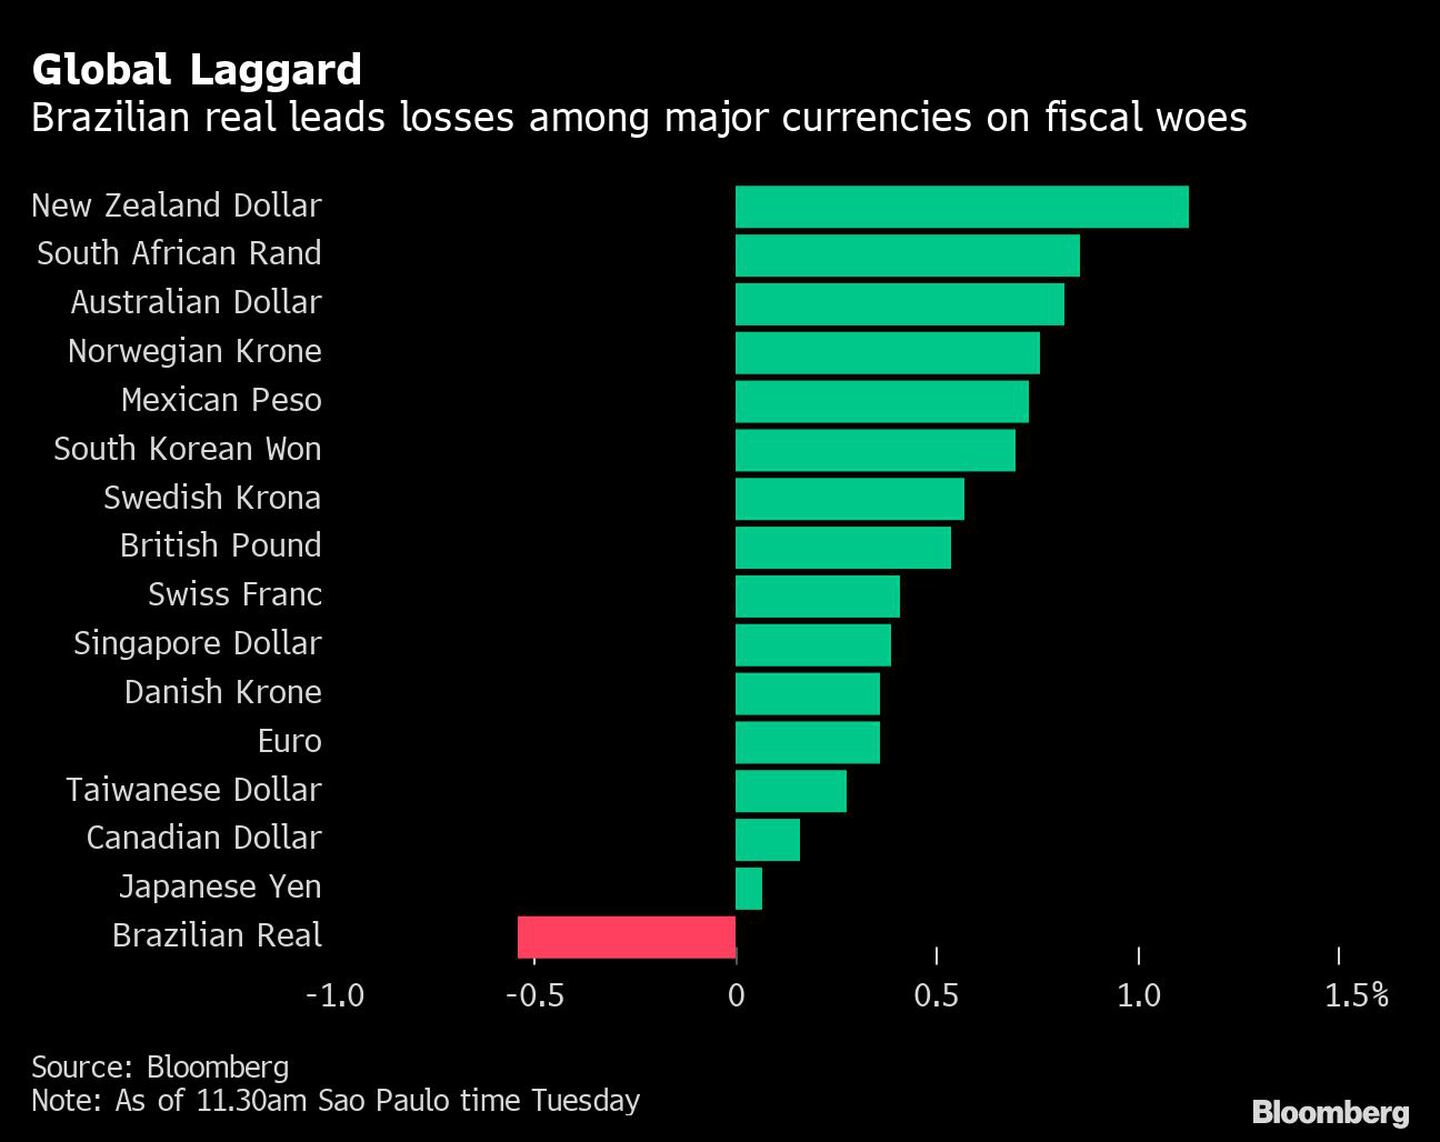 El real brasileño lidera las pérdidas entre las principales divisas por los problemas fiscales.dfd